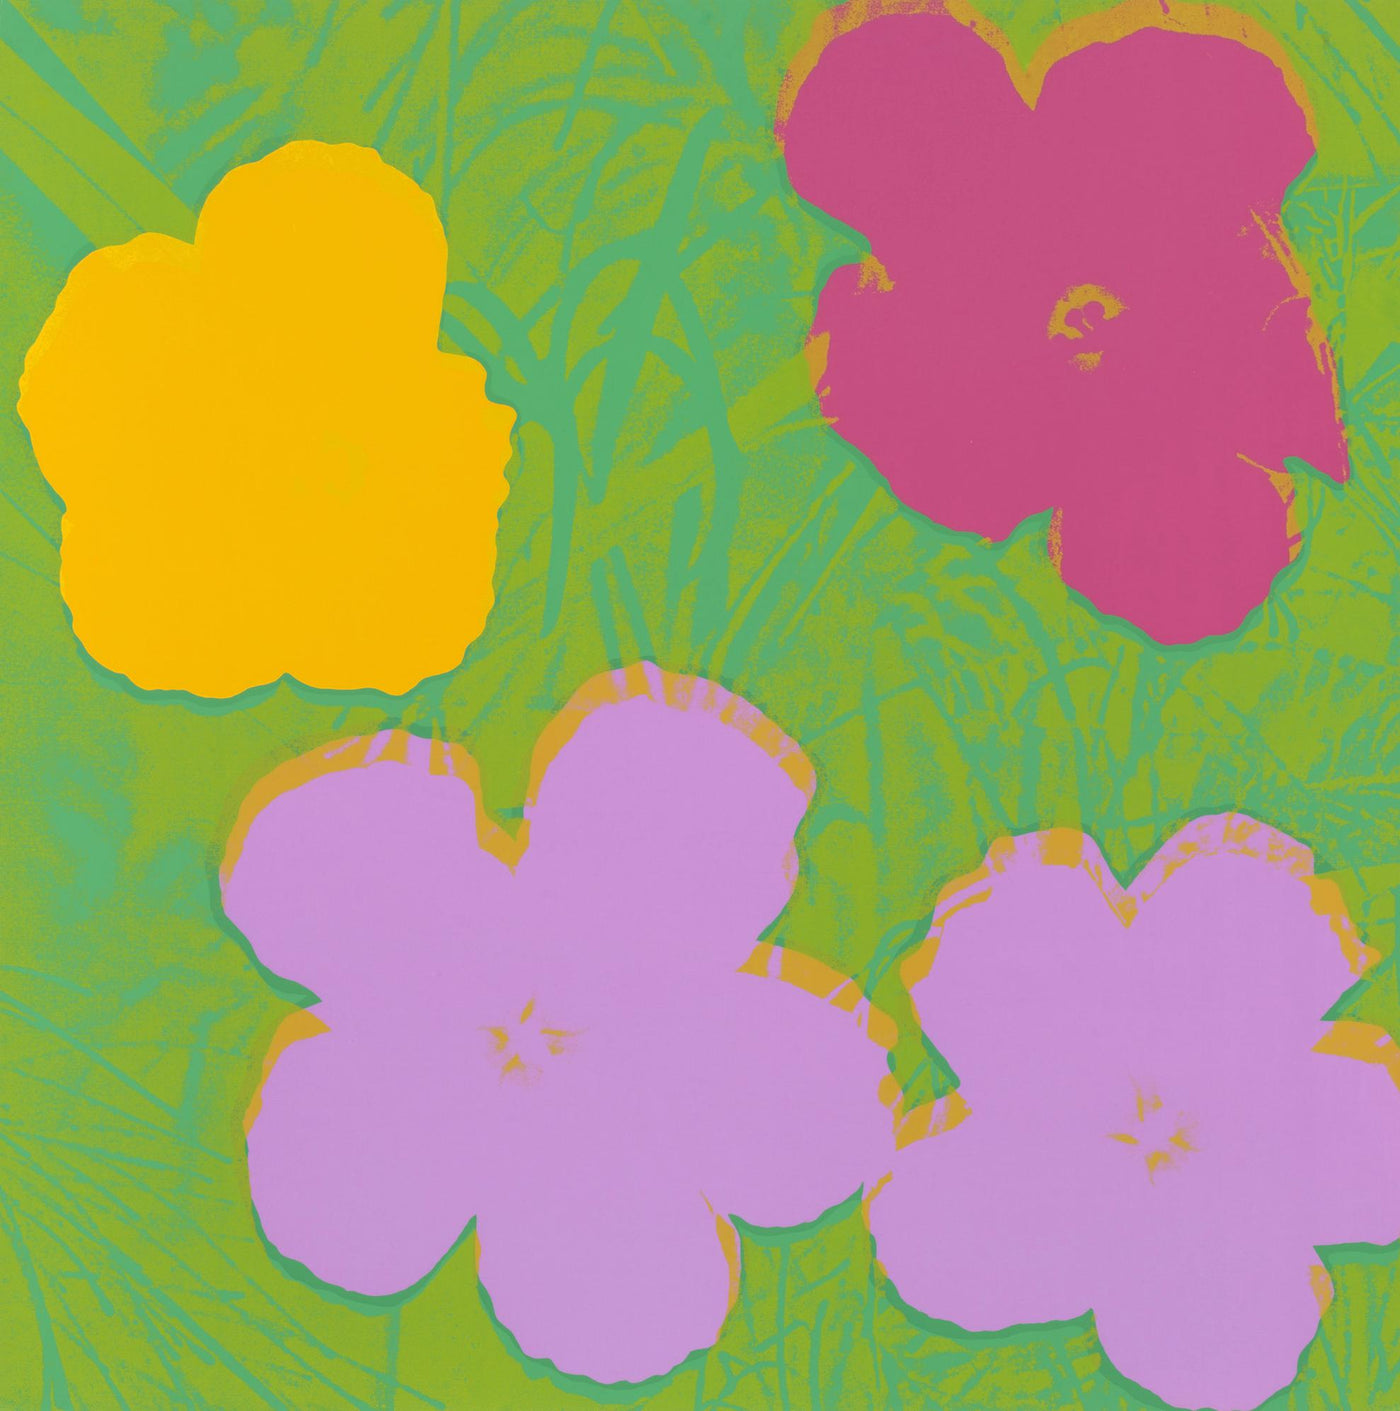 Andy Warhol Flowers (Feldman II.68) 1970